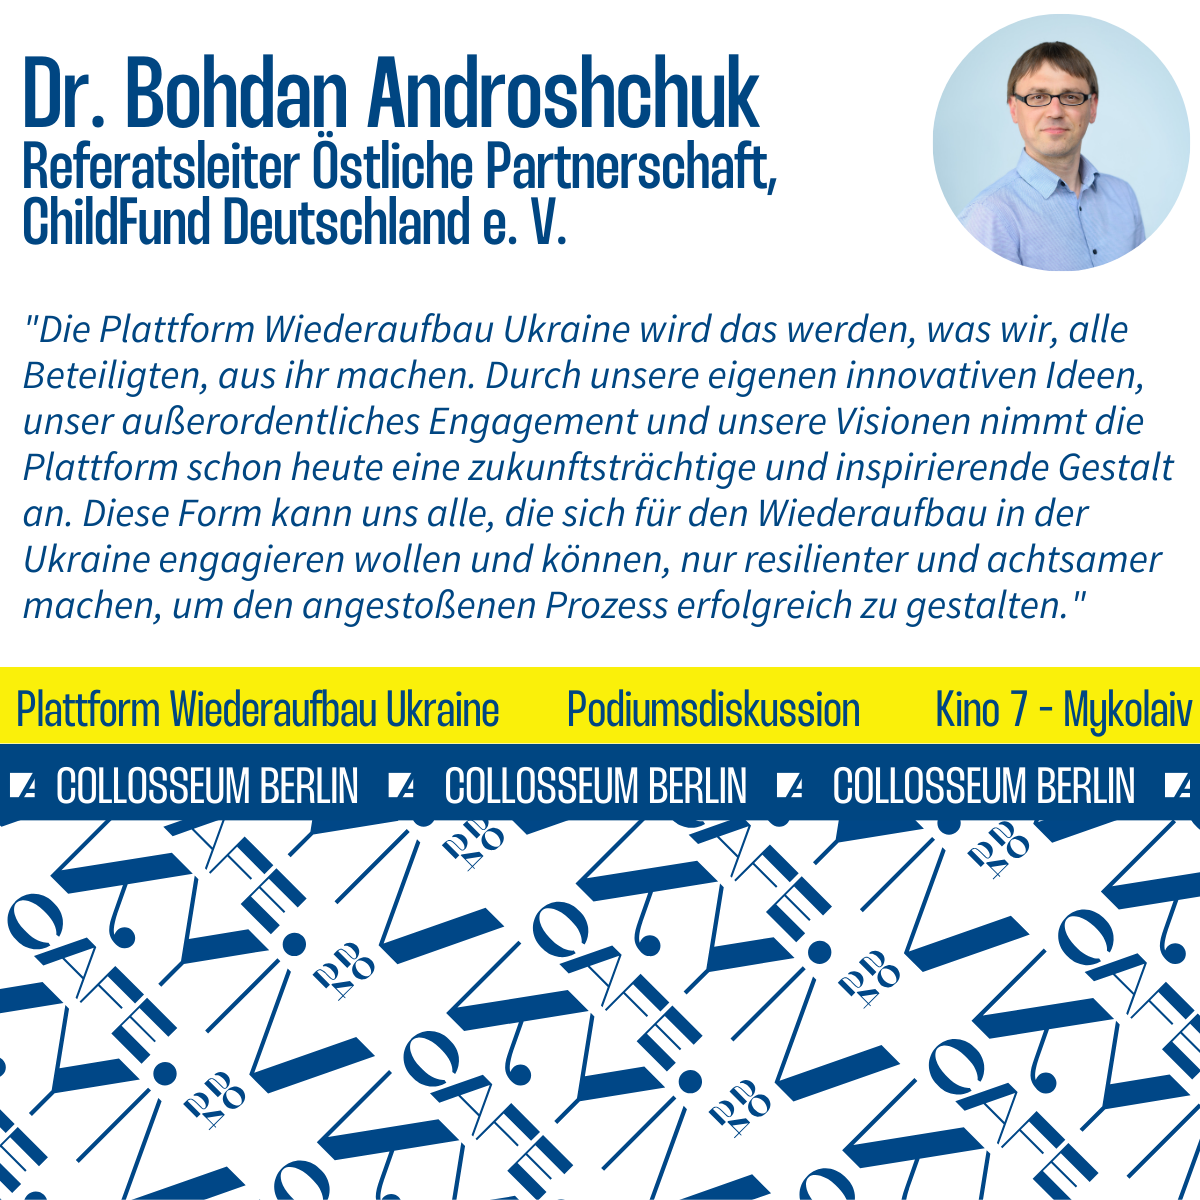 Statement von Dr. Bohdan Androshchuk